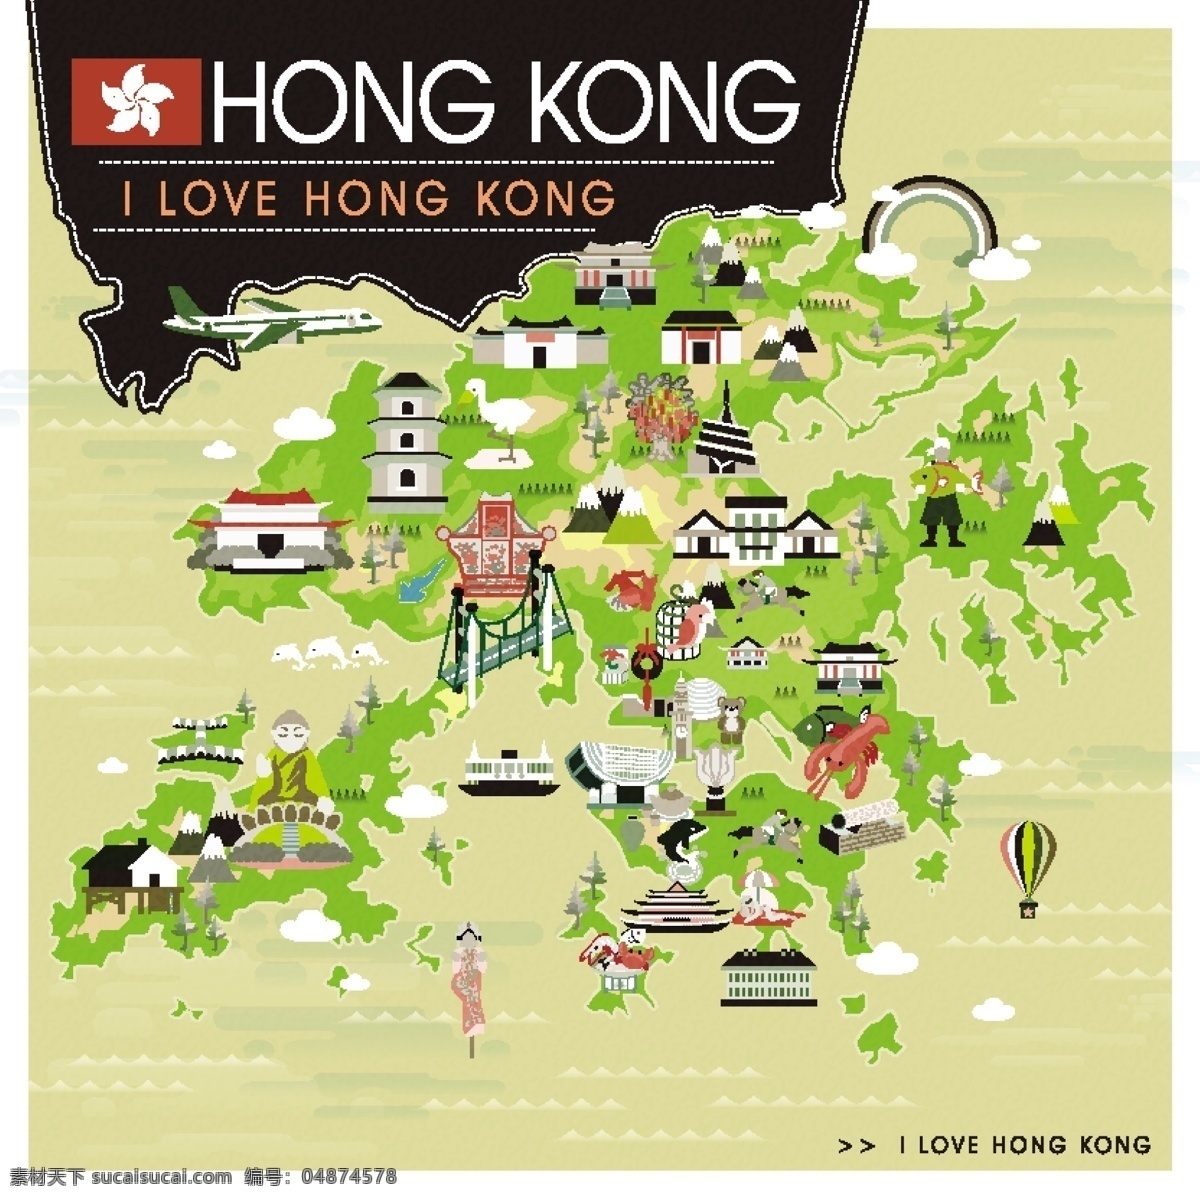 香港旅游 旅行 扁平化 矢量 香港 旅游 装饰图案 矢量素材 设计素材 矢量图库